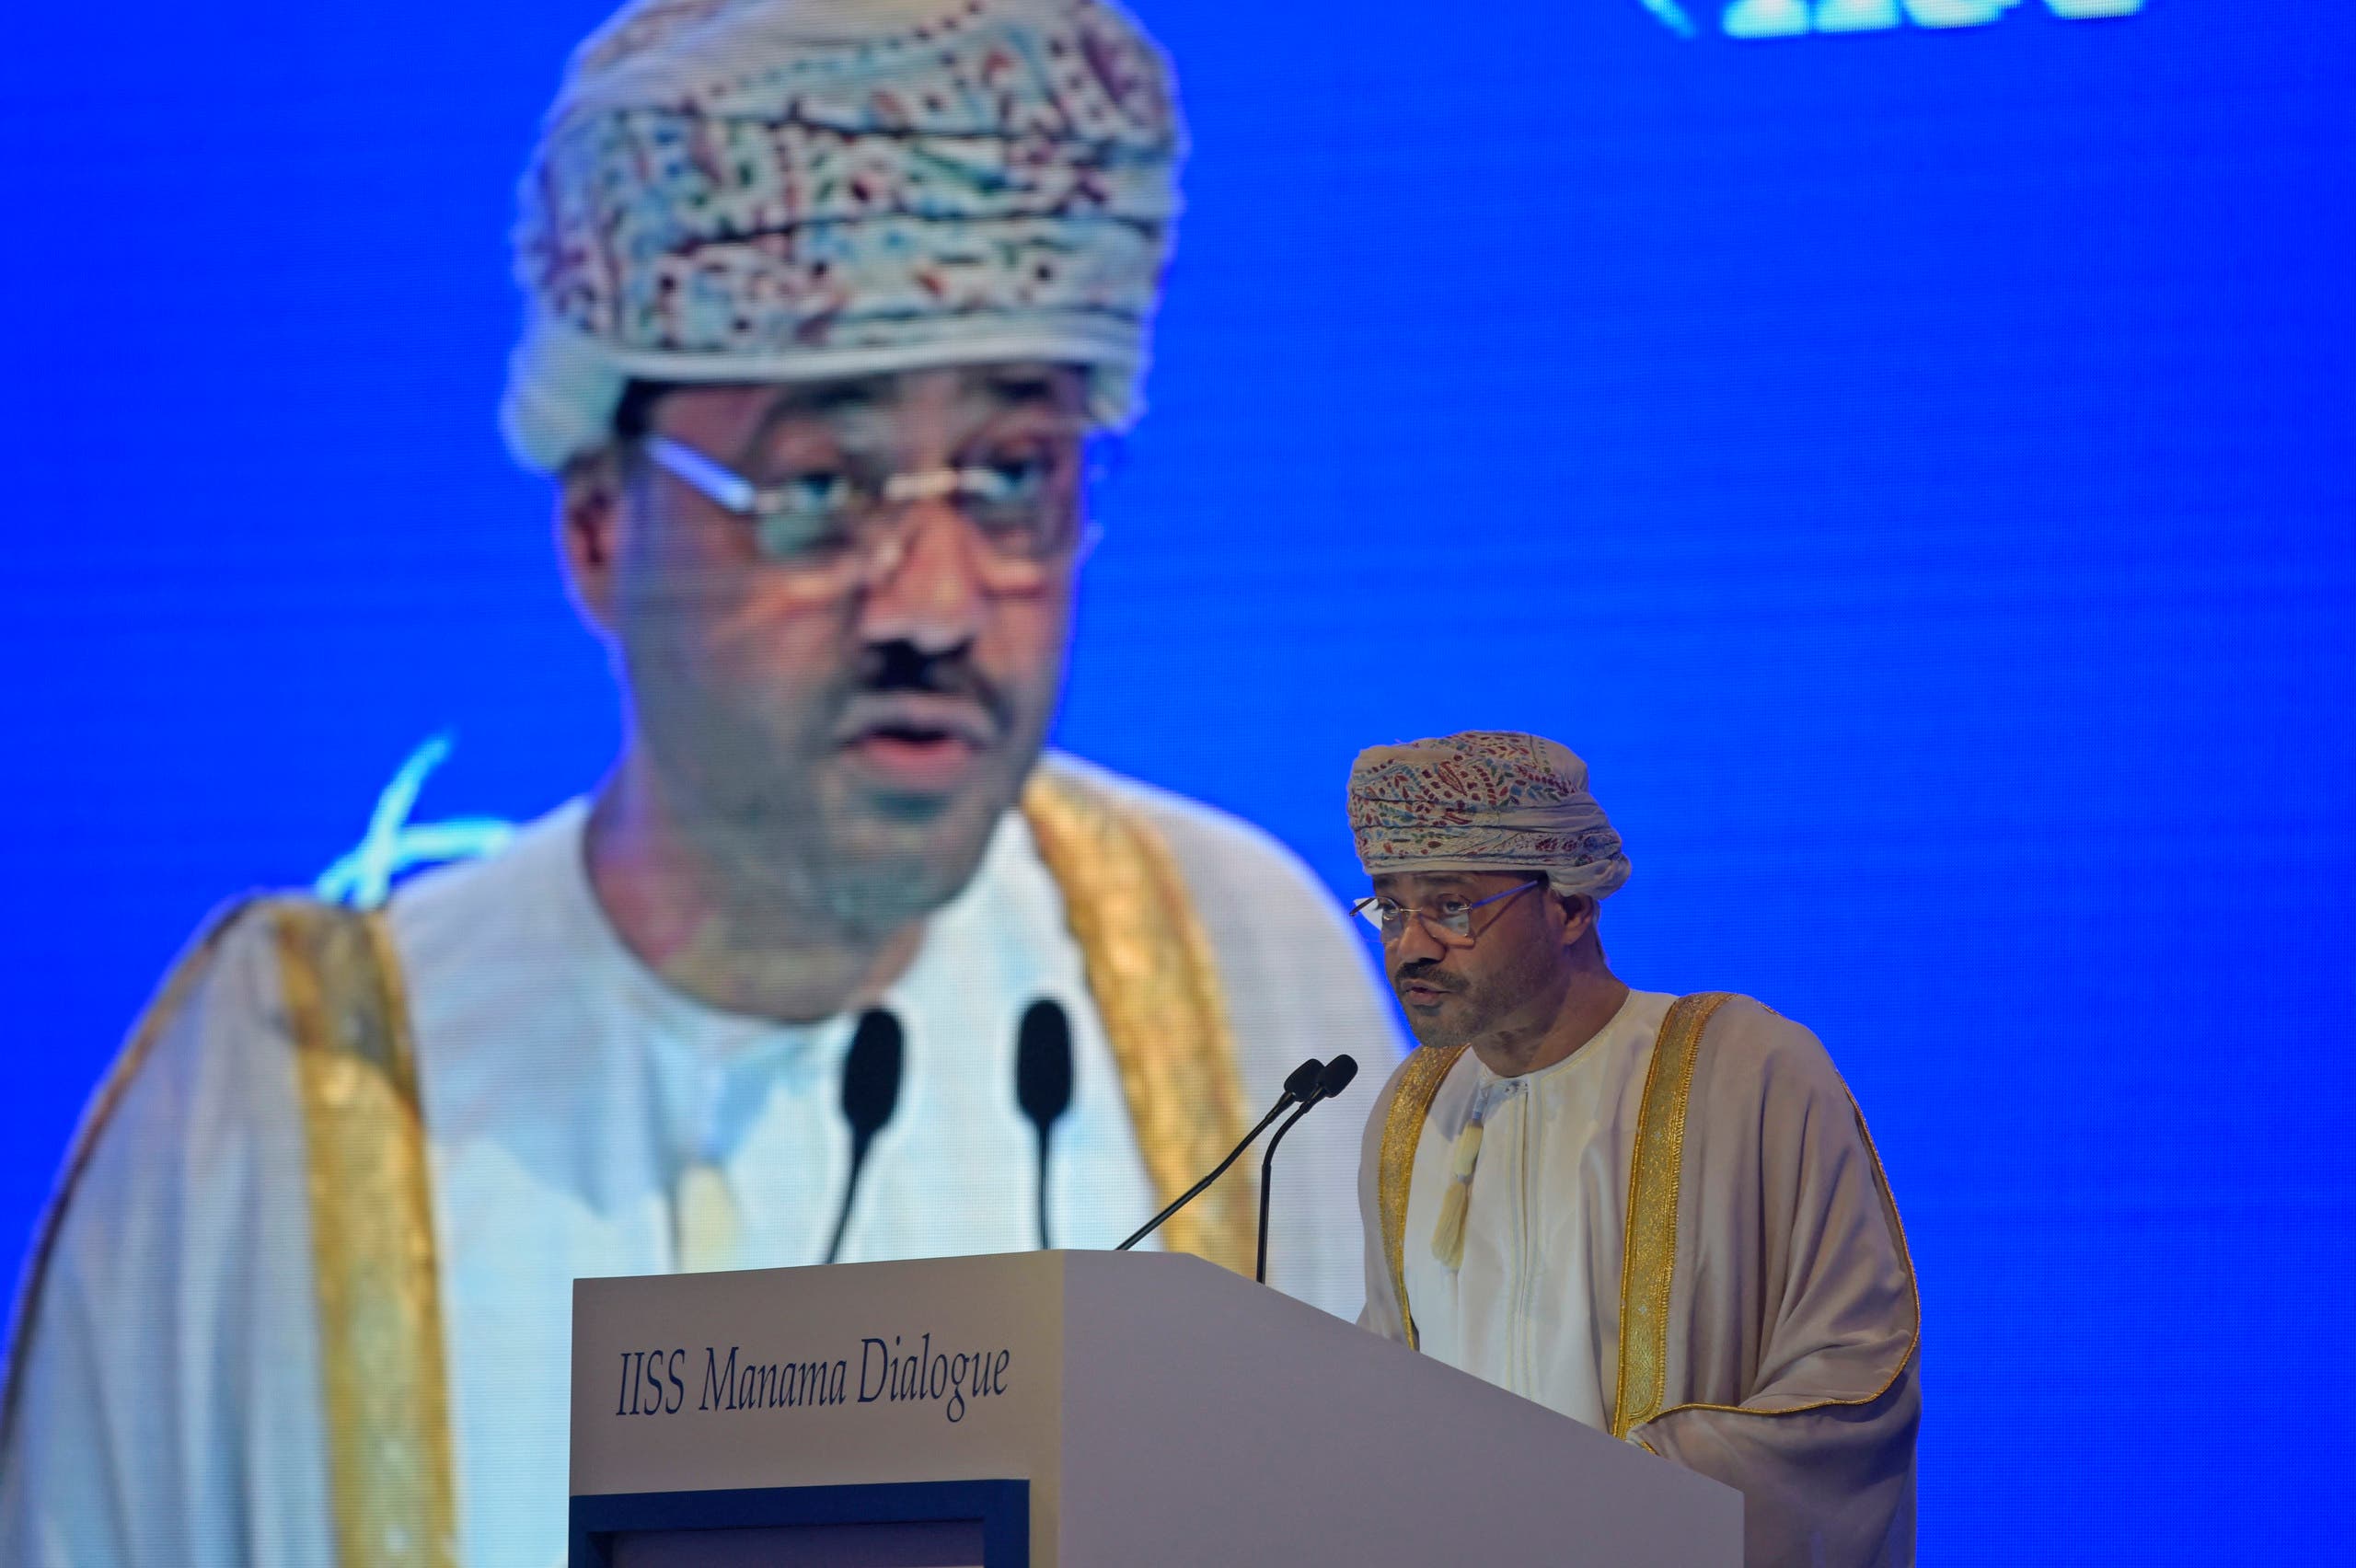 بدر بن حمد بن حمود آل بوسیدی ، وزیر خارجه عمان (بایگانی - خبرگزاری فرانسه)